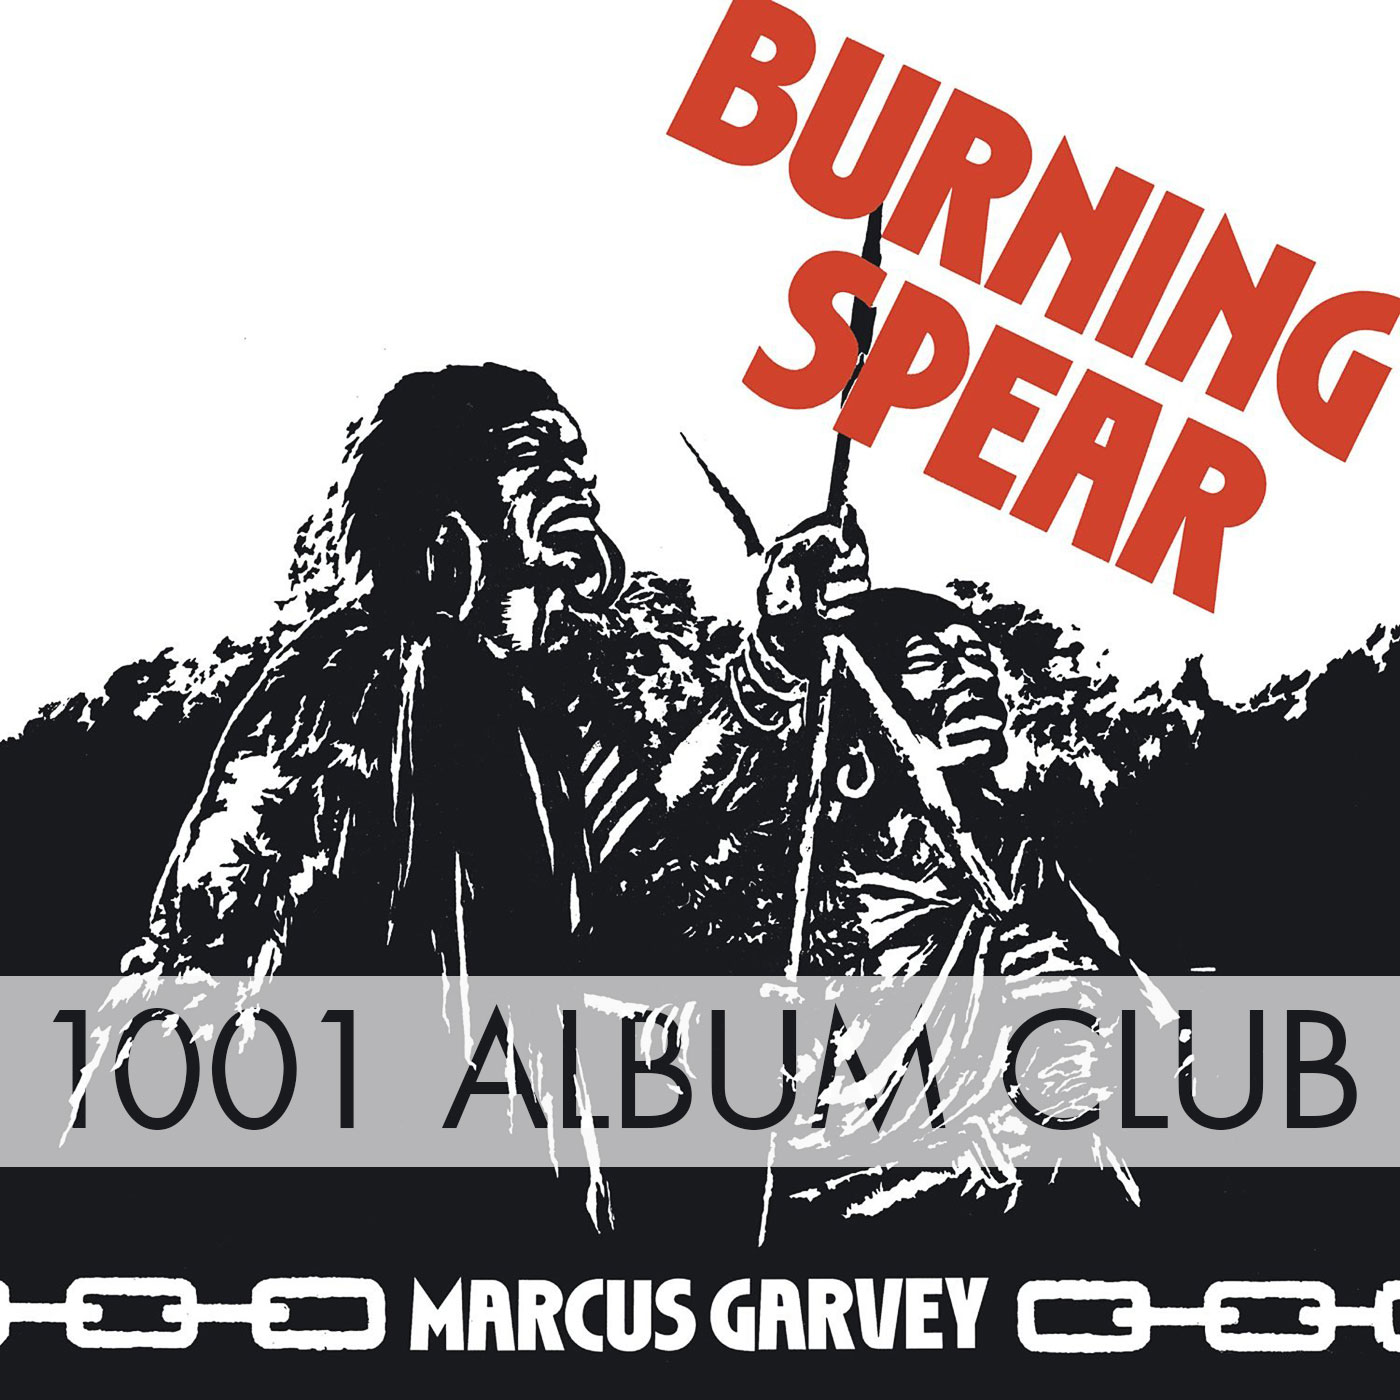 334 Burning Spear – Marcus Garvey – 1001 Album Club